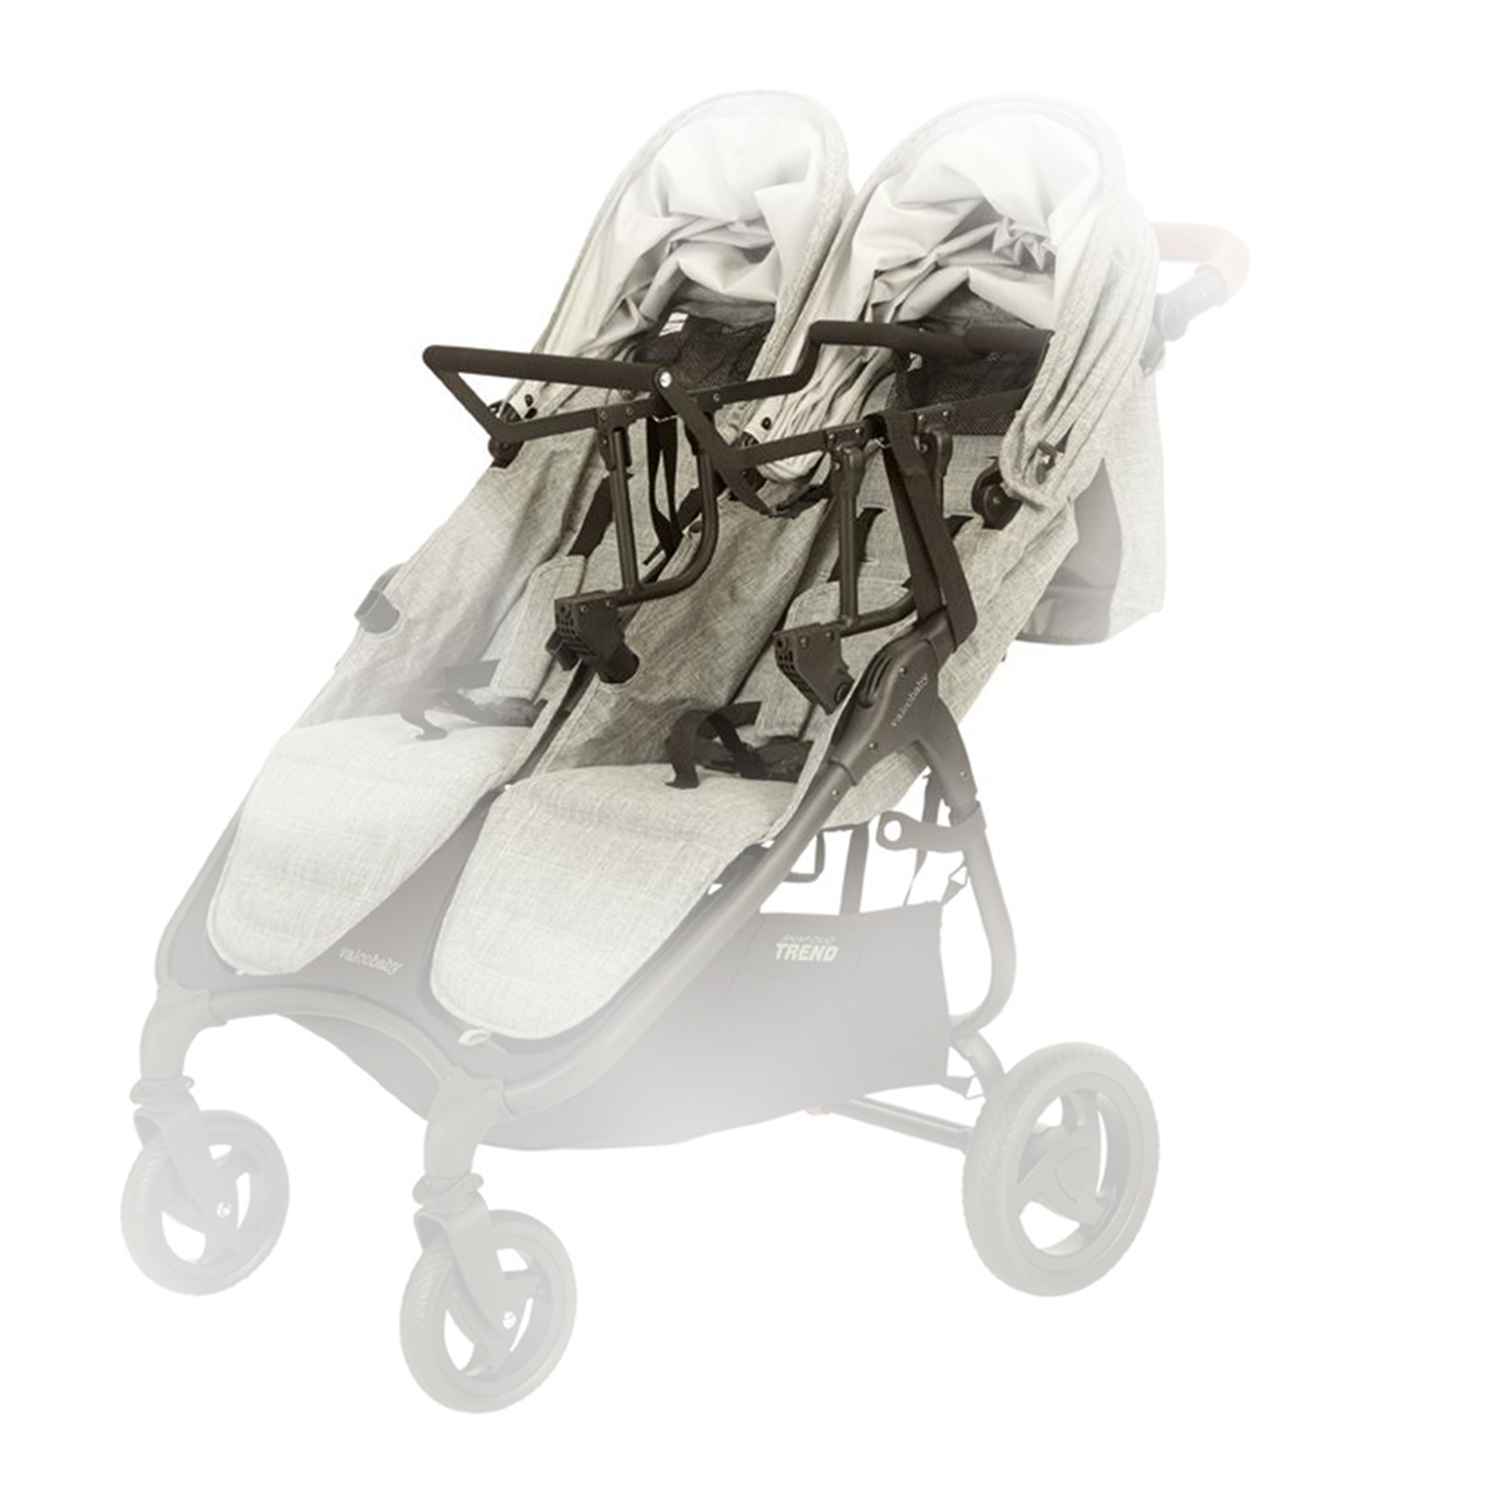 Адаптер Universal Car Seat / Duo Trend Valco Baby адаптер для автокресла valco baby universal car seat duo trend